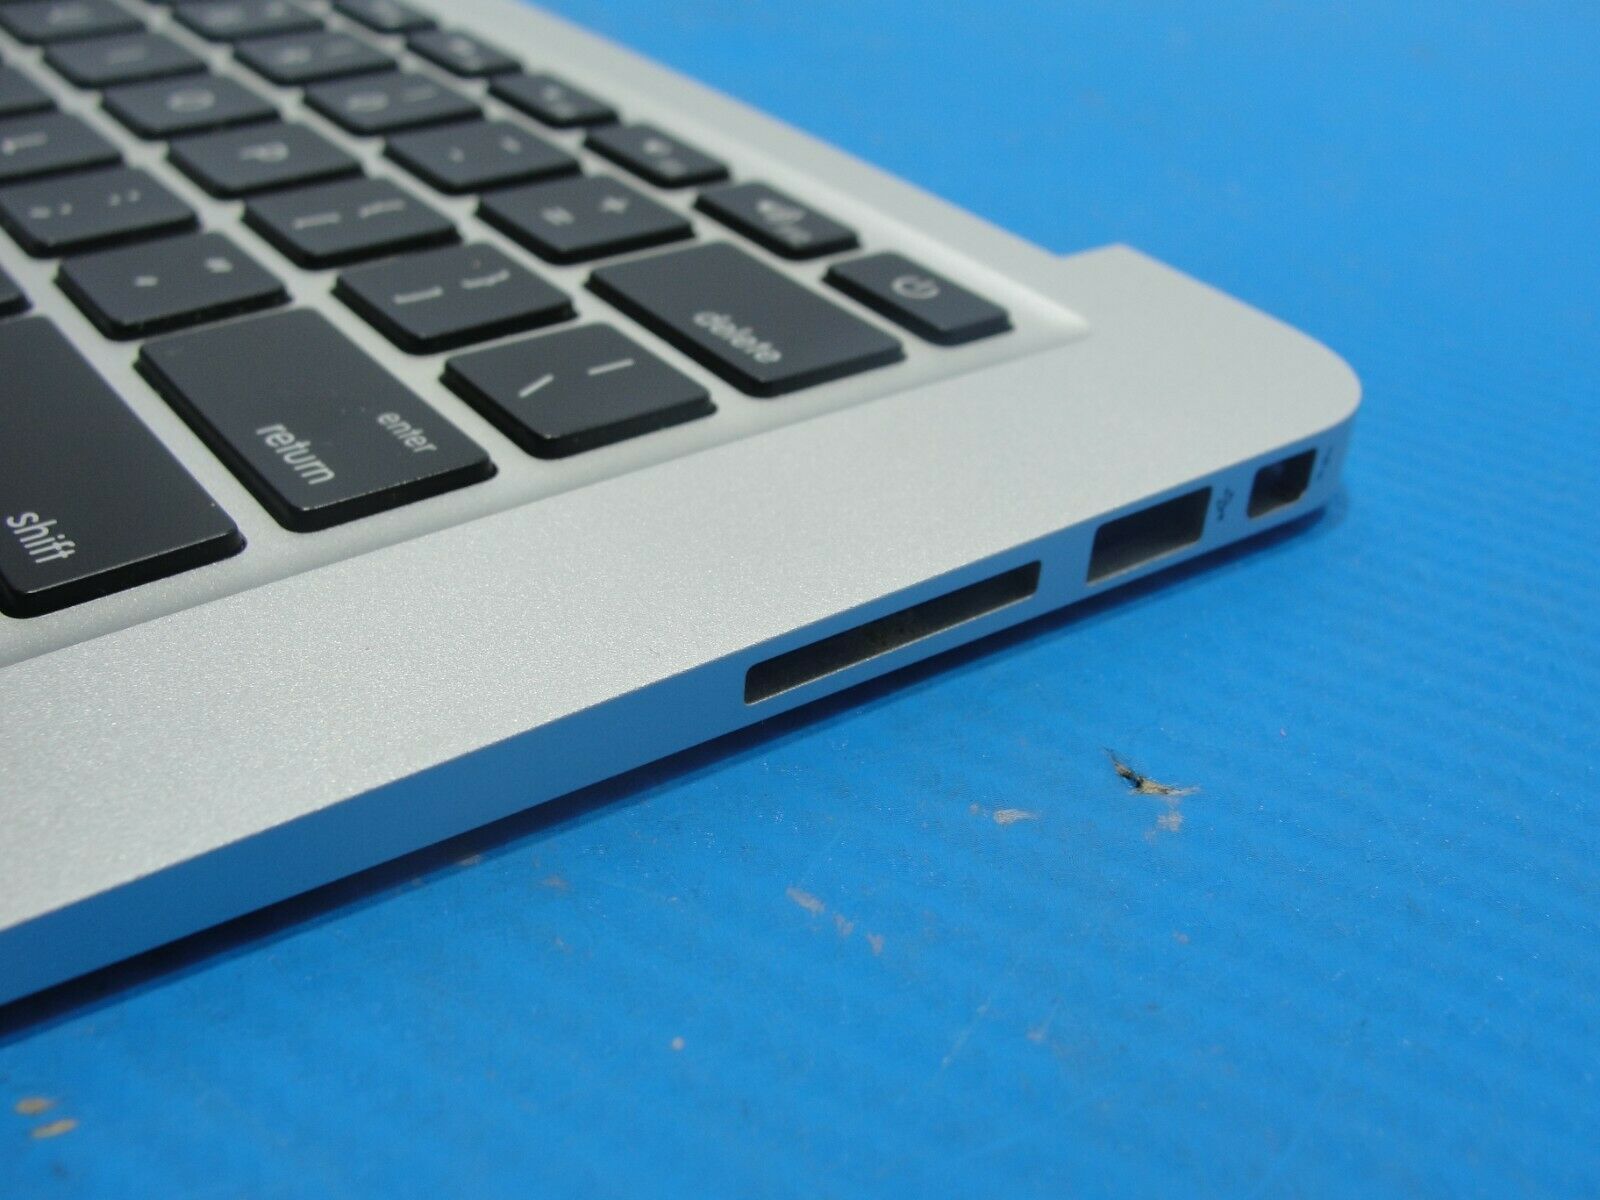 MacBook Air 13 A1369 2011 MC965LL/A Top Case w/Keyboard Trackpad Silver 661-6059 